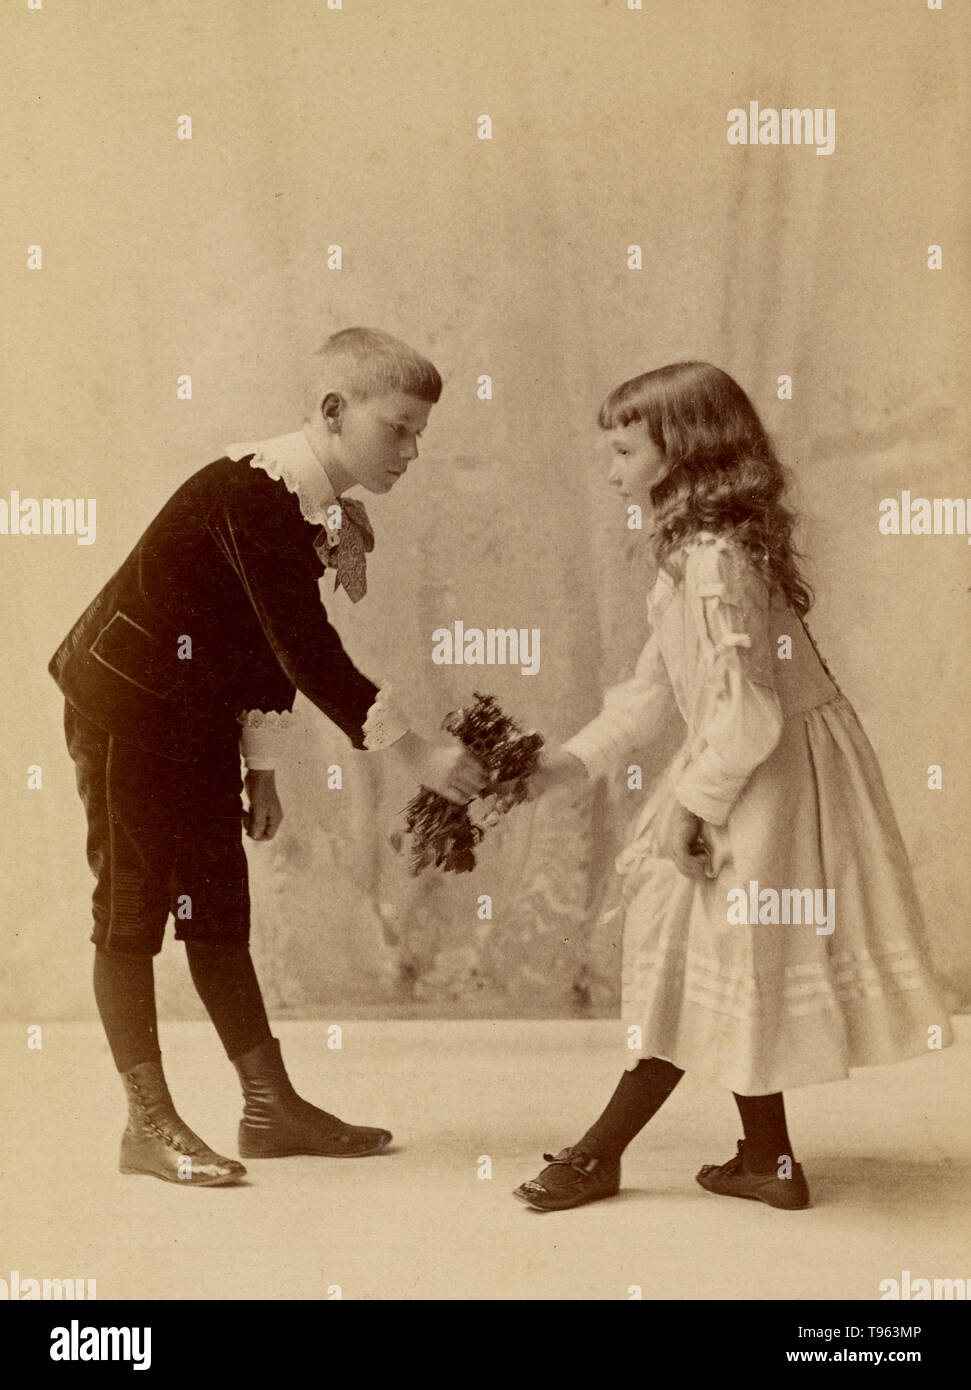 Ragazzo giovane si inchinano e presentando un mazzo di fiori per un curtseying giovane ragazza. George H. Hastings, fotografo (American, circa 1849 - 1931). Albume silver stampa, 1880. Foto Stock